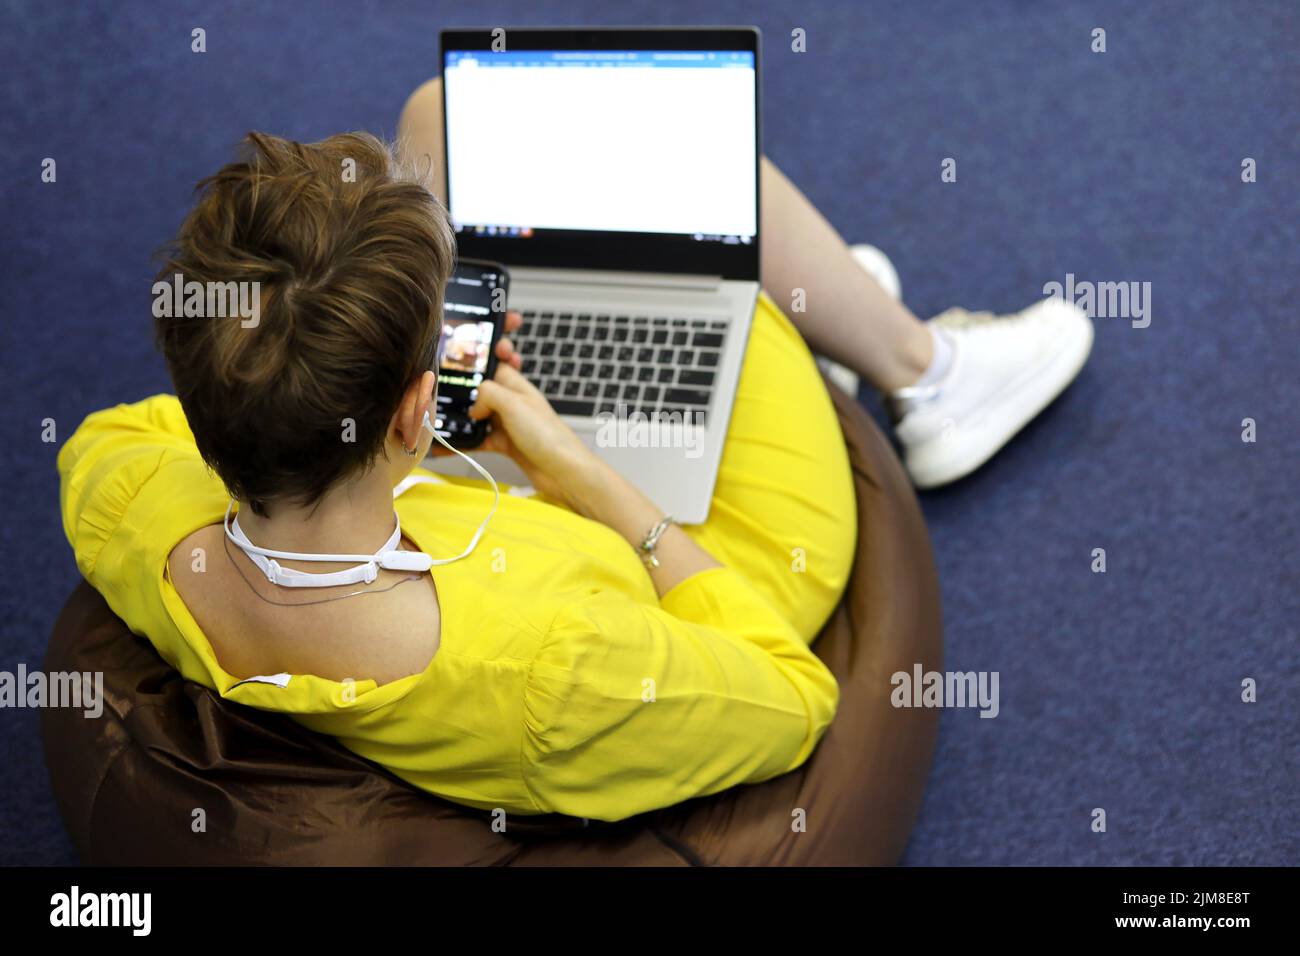 Femme dans un casque portant une robe jaune assise sur un tabouret rembourré avec un smartphone à la main et un ordinateur portable sur les genoux, vue du dessus. Écouter de la musique Banque D'Images